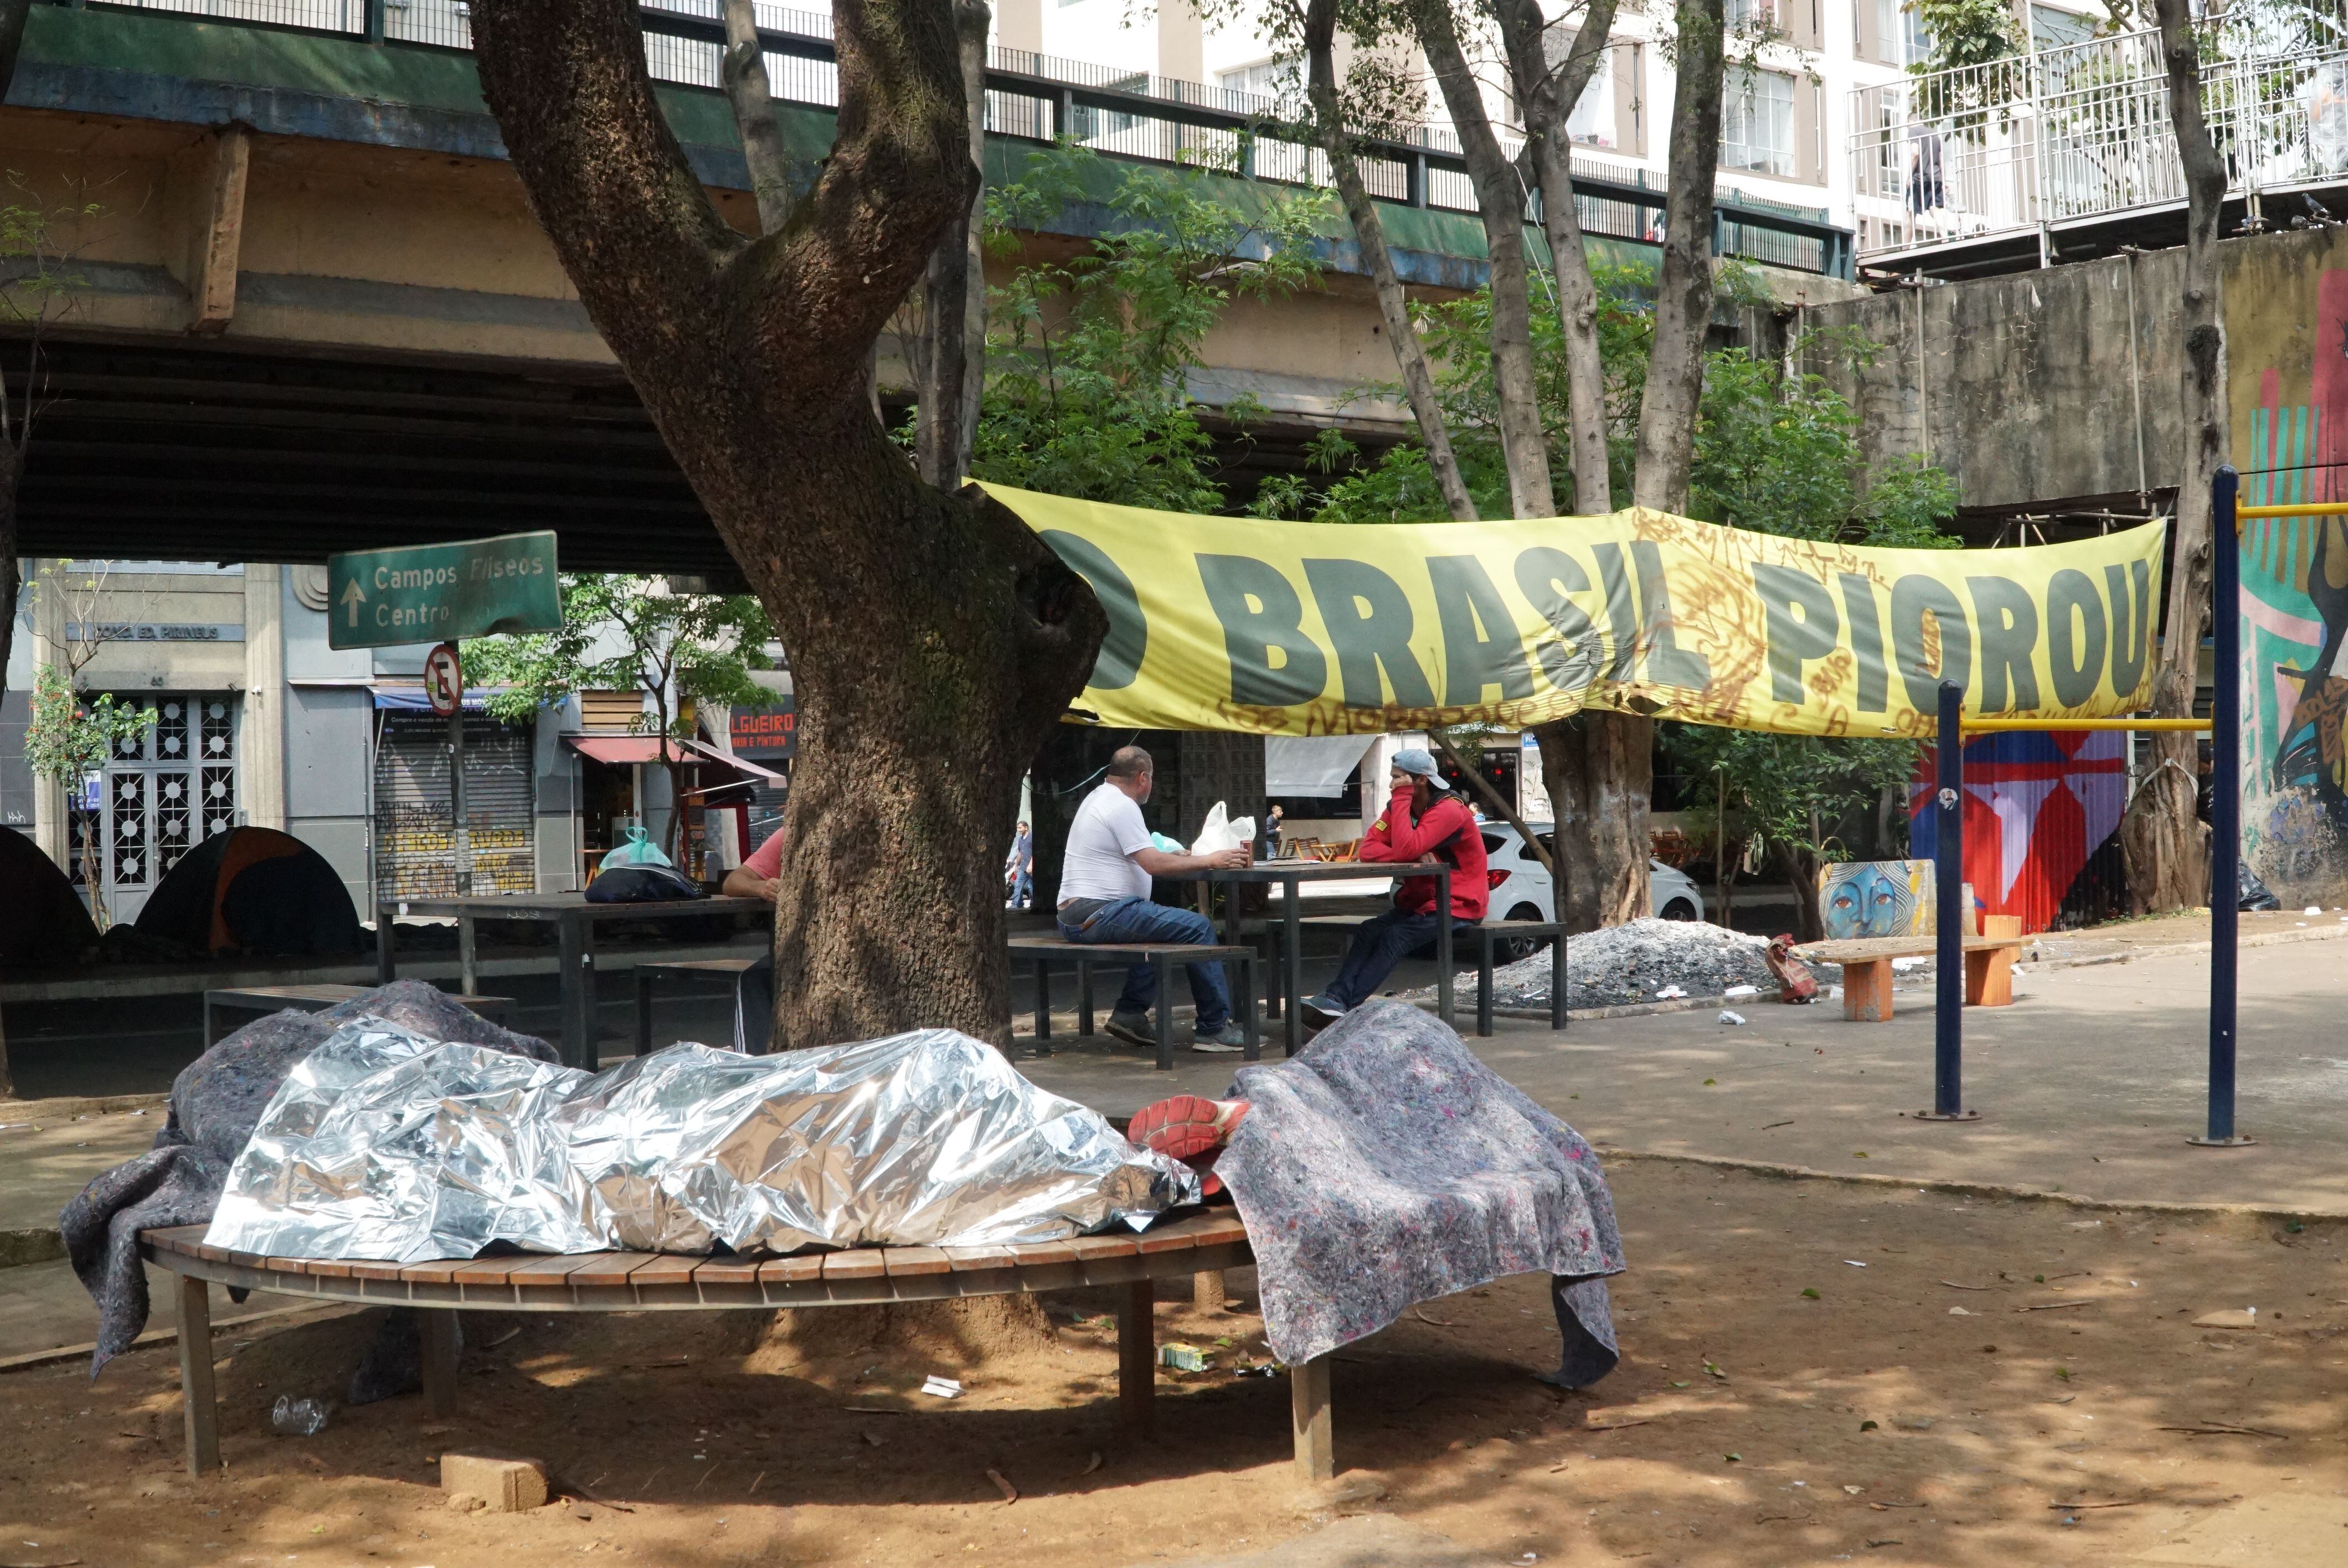 Pancarta “Brasil ha empeorado” en la plaza Marechal Deodoro, en el centro de São Paulo.